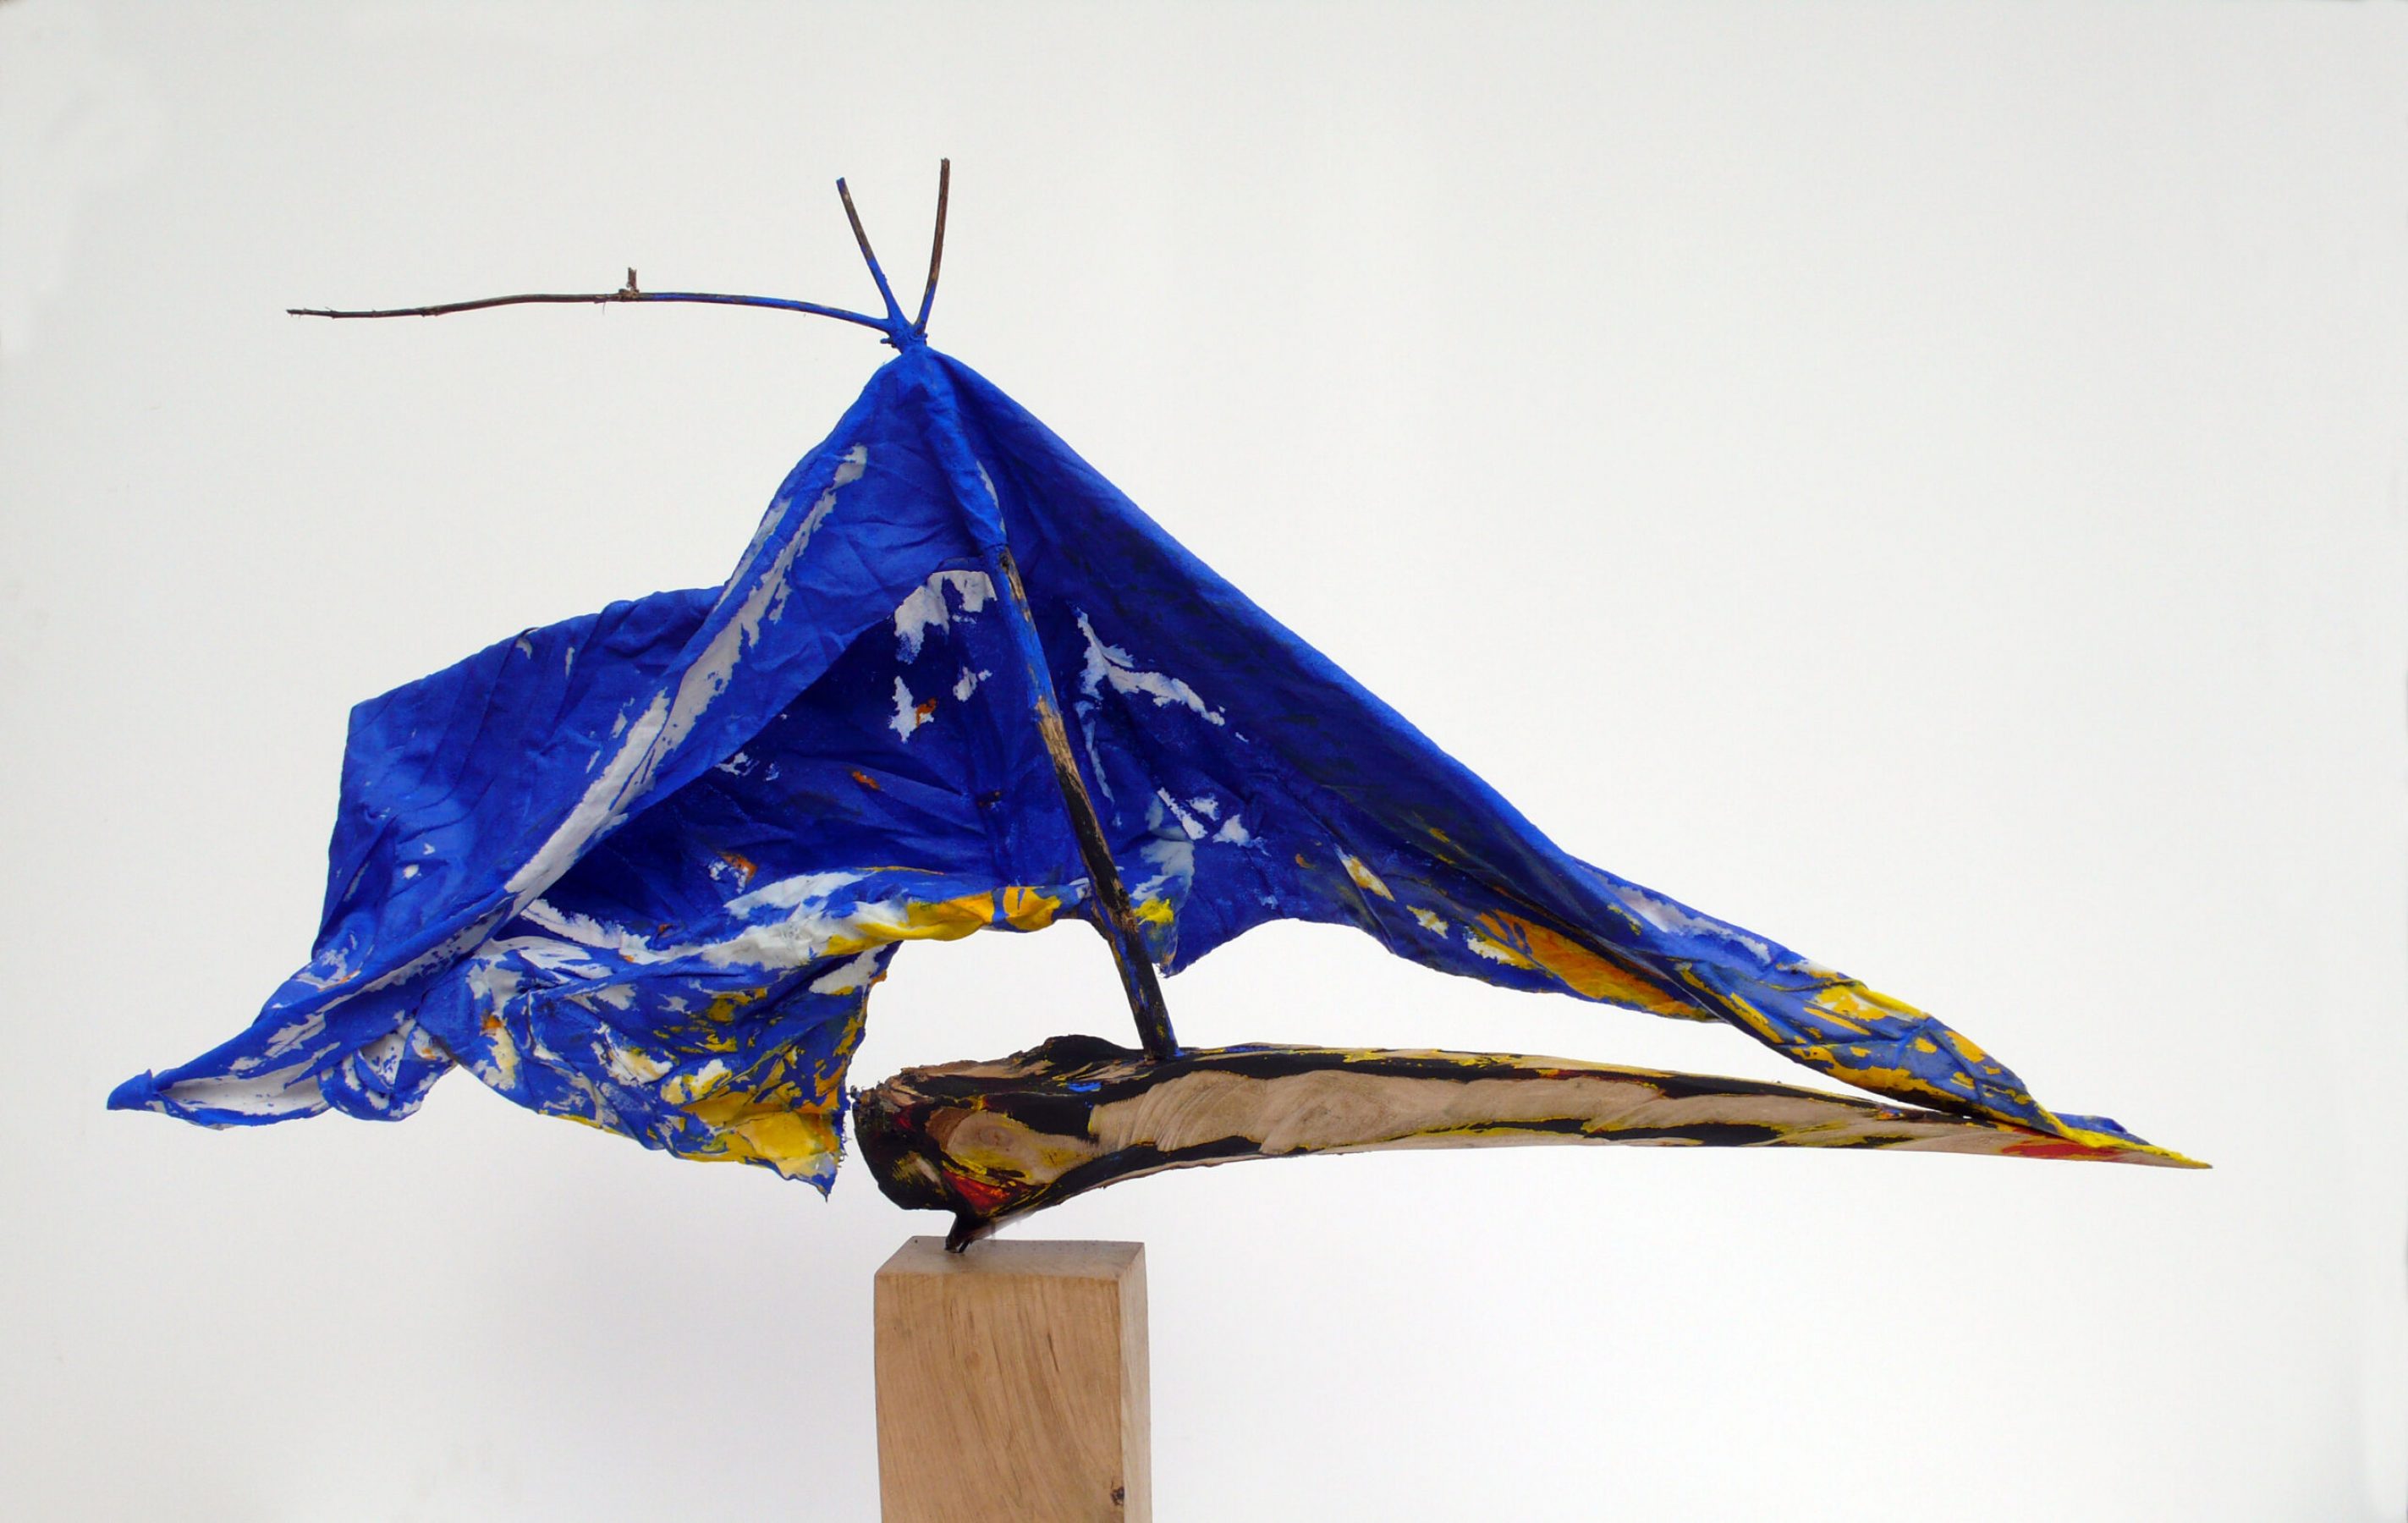 2012 Blaues Boot II, Malerei auf Leinwand und Holz, 67 x 16 x 73 cm